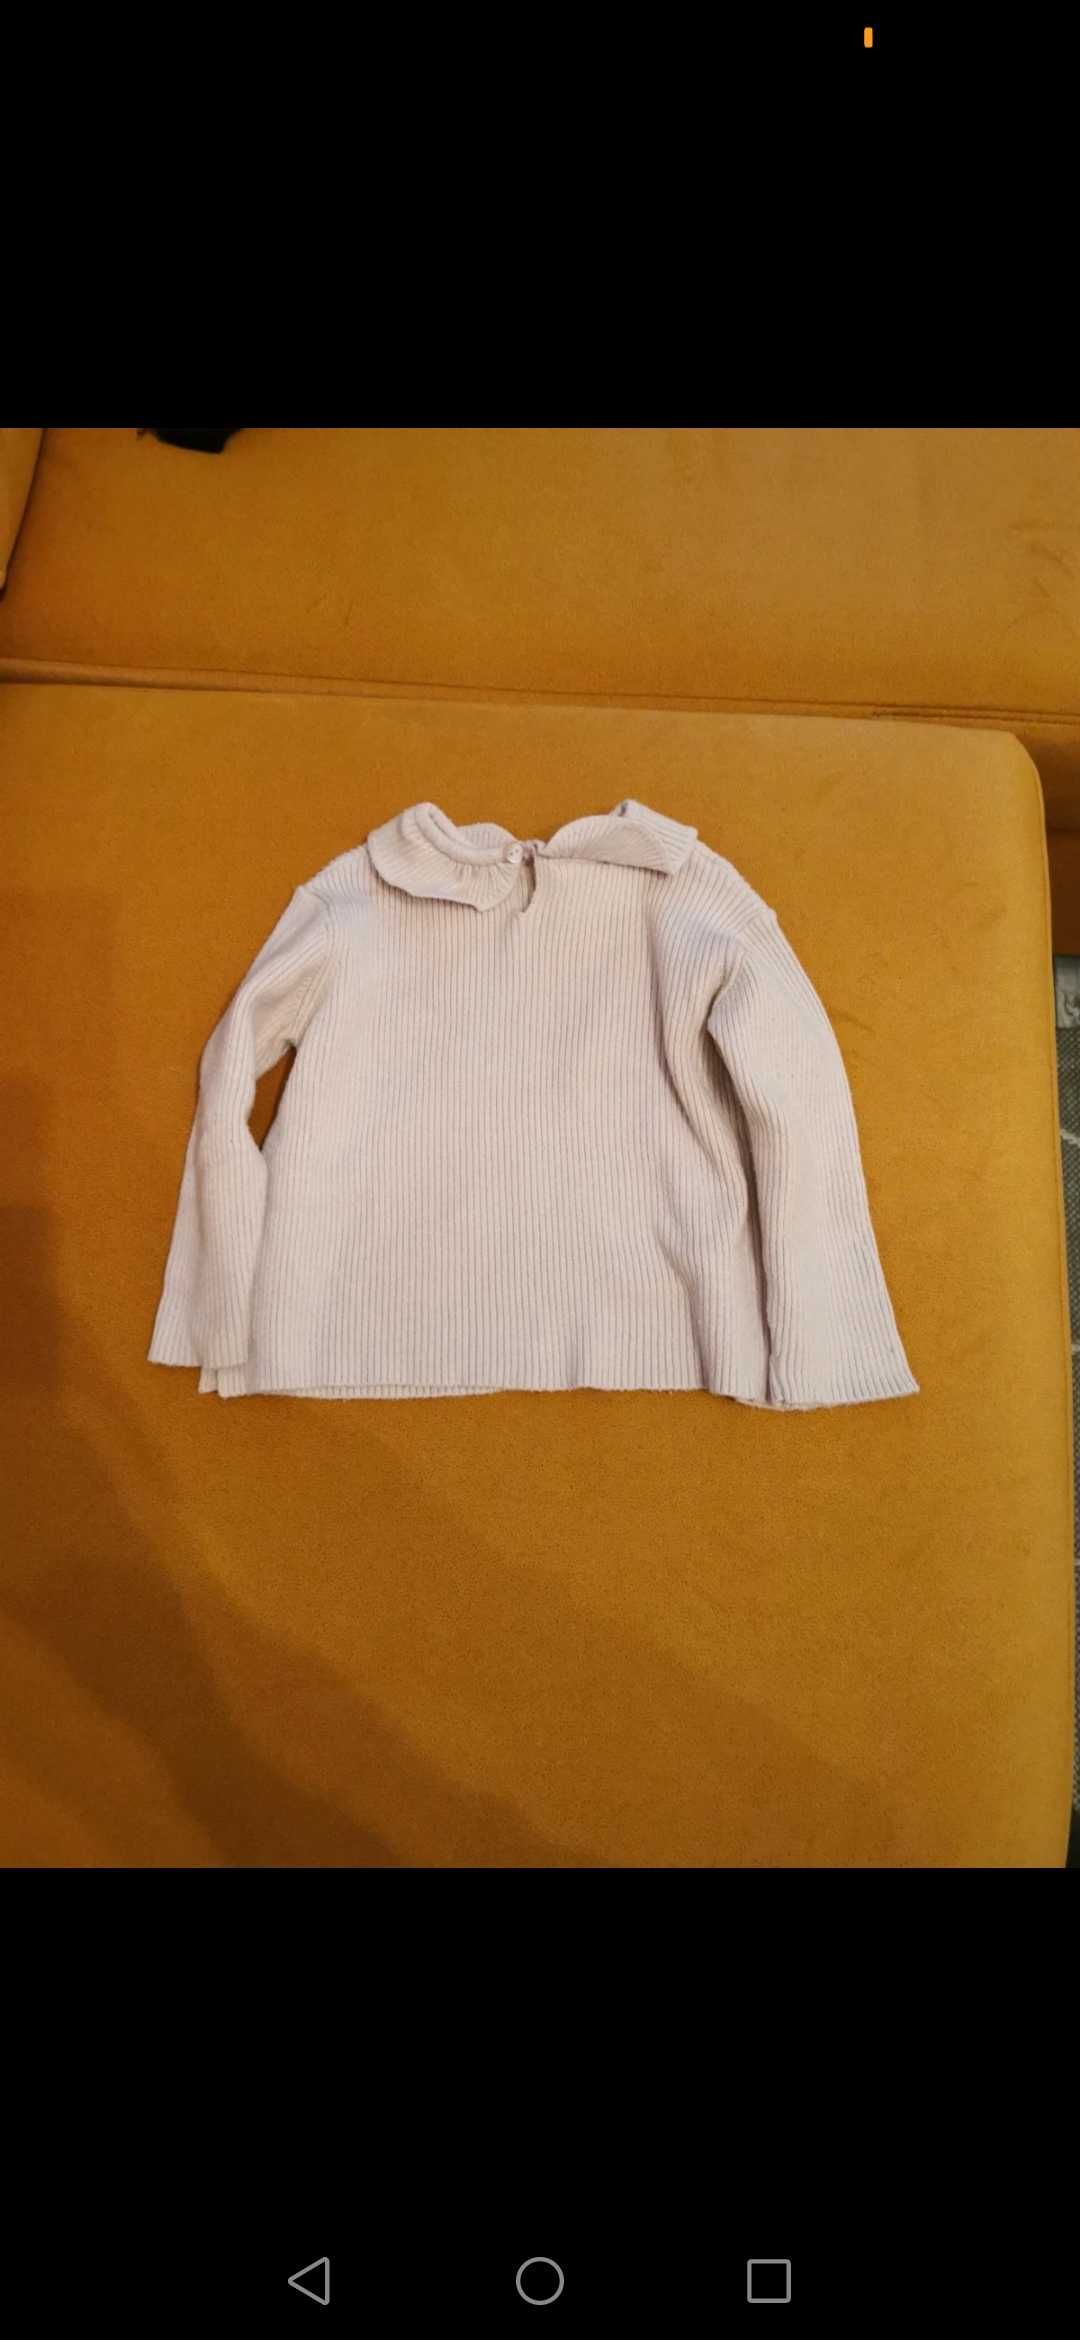 Sweterek dziewczęcy Zara r. 80 cm